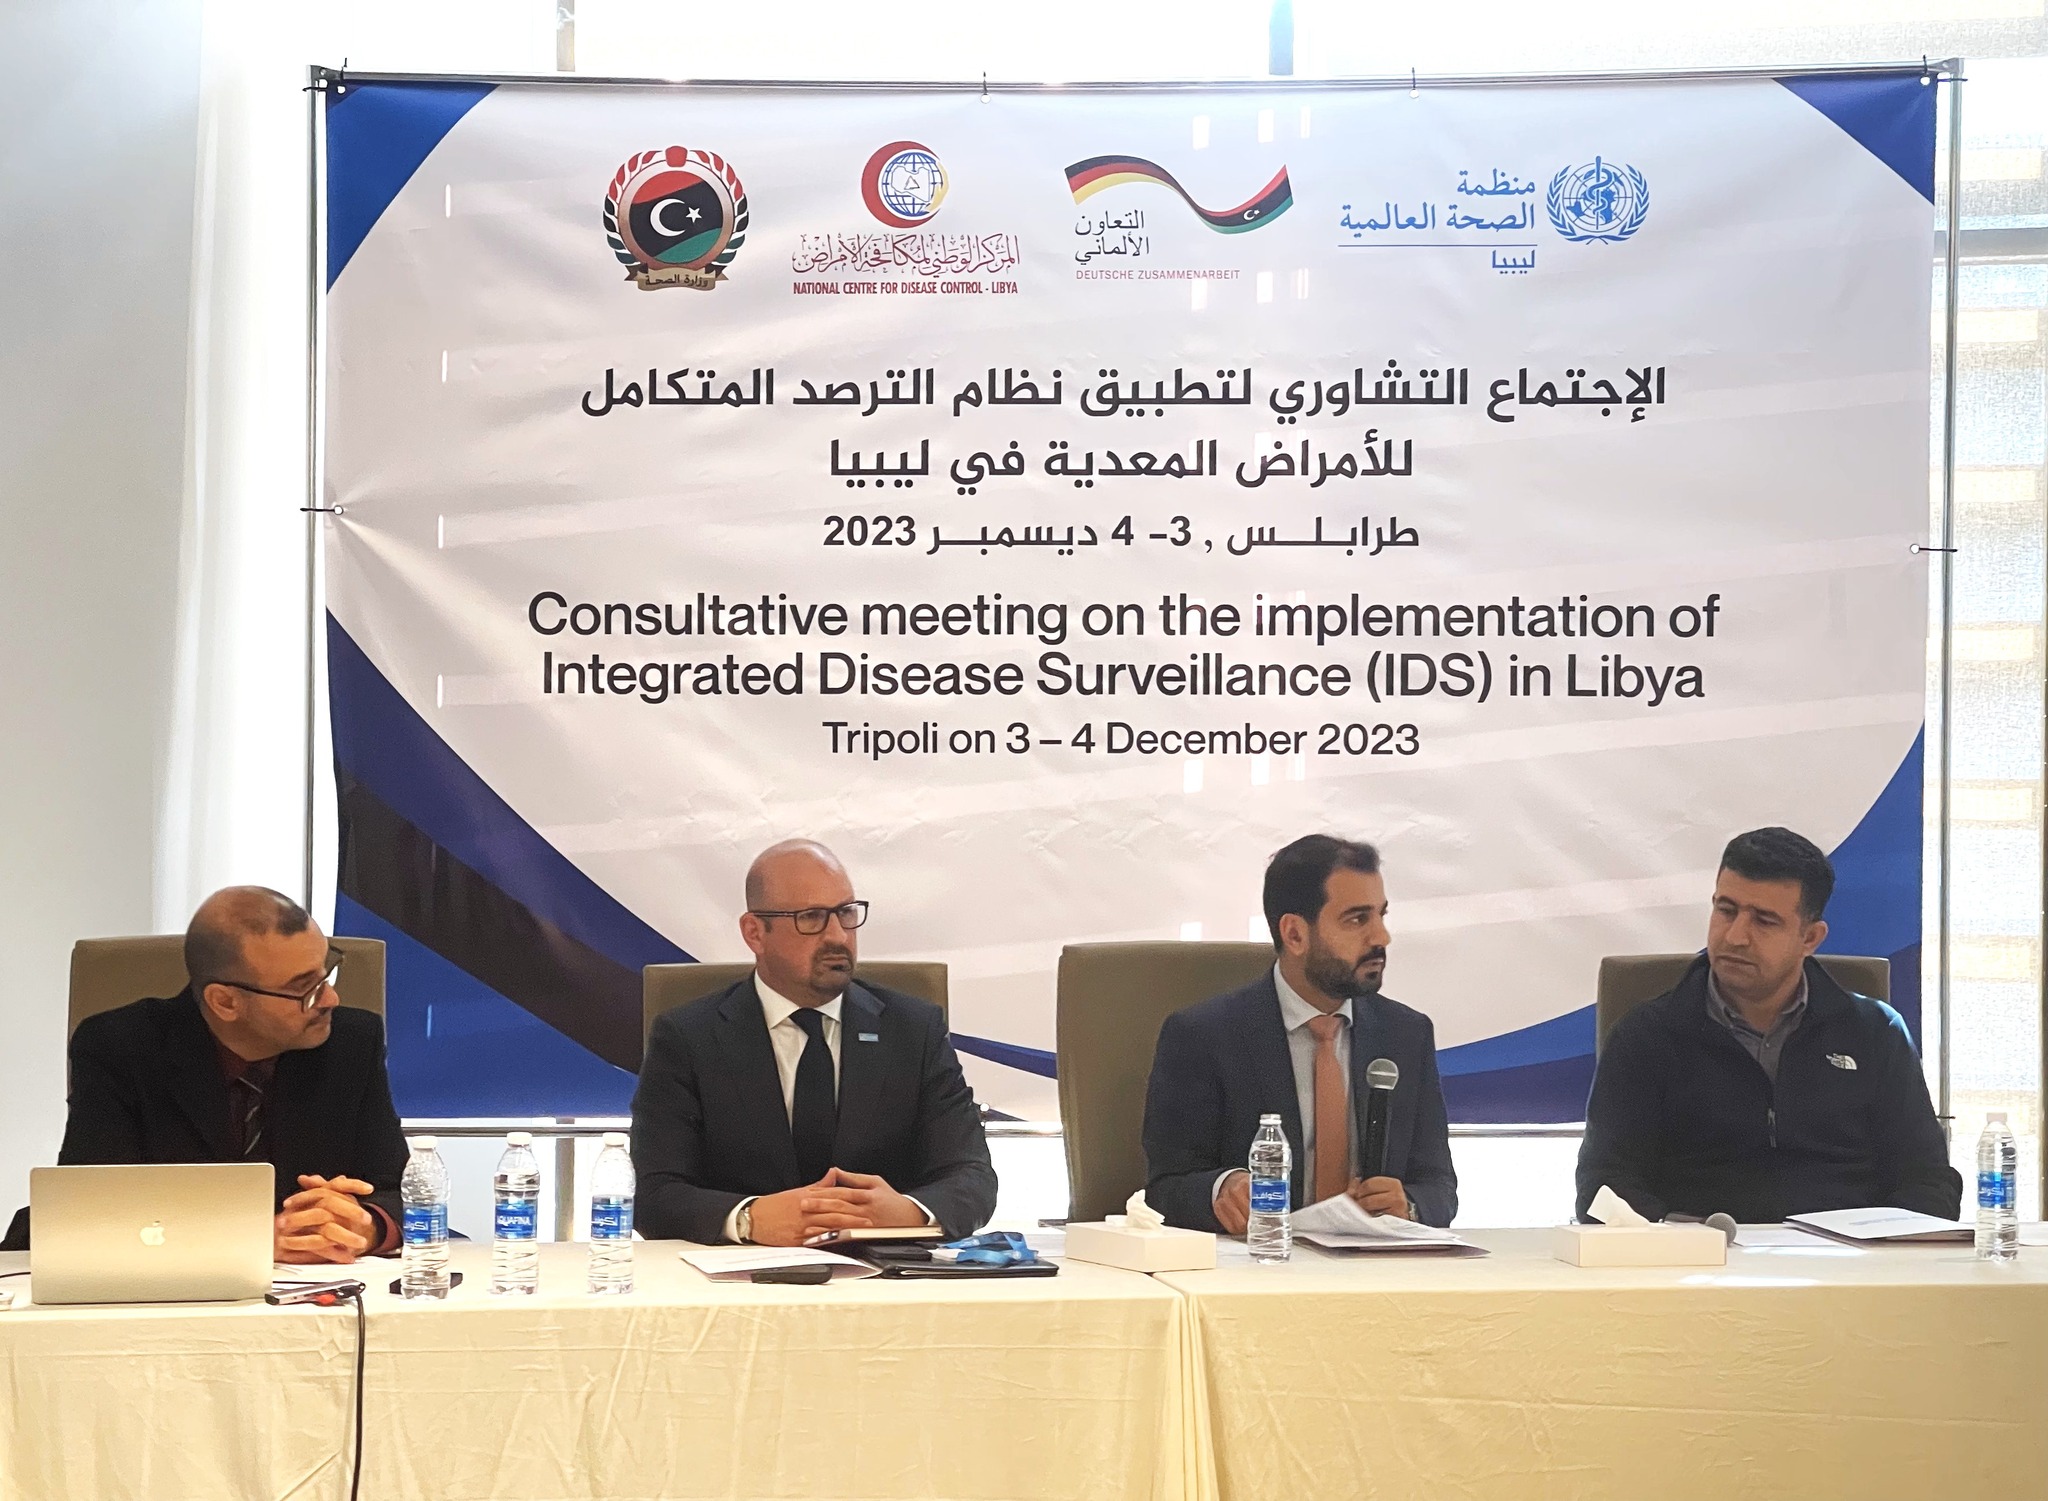 بدء الاجتماع التشاوري لتطبيق نظام الرصد المتكامل للأمراض المعدية في ليبيا.